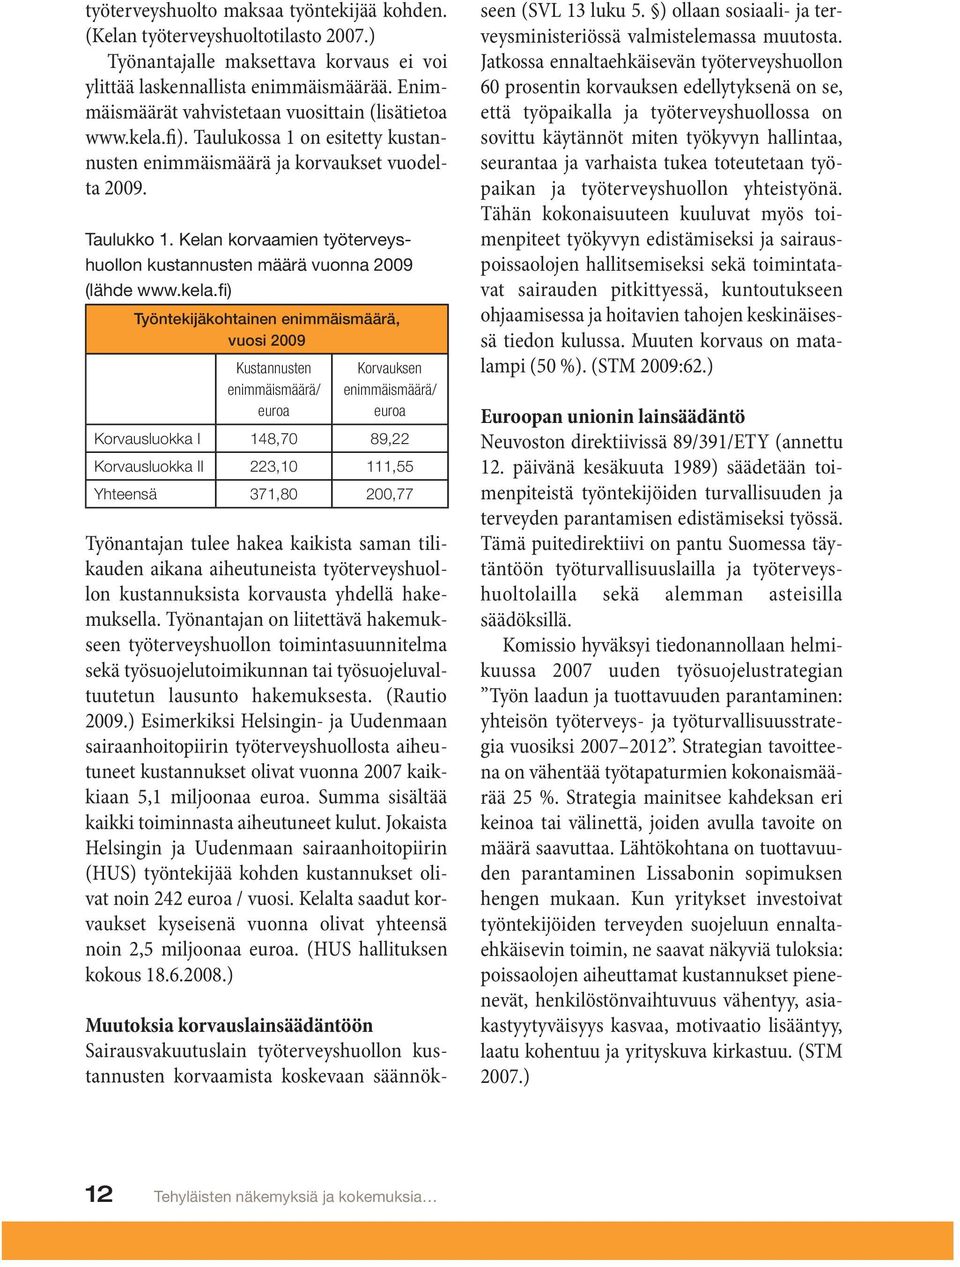 Kelan korvaamien työterveyshuollon kustannusten määrä vuonna 2009 (lähde www.kela.